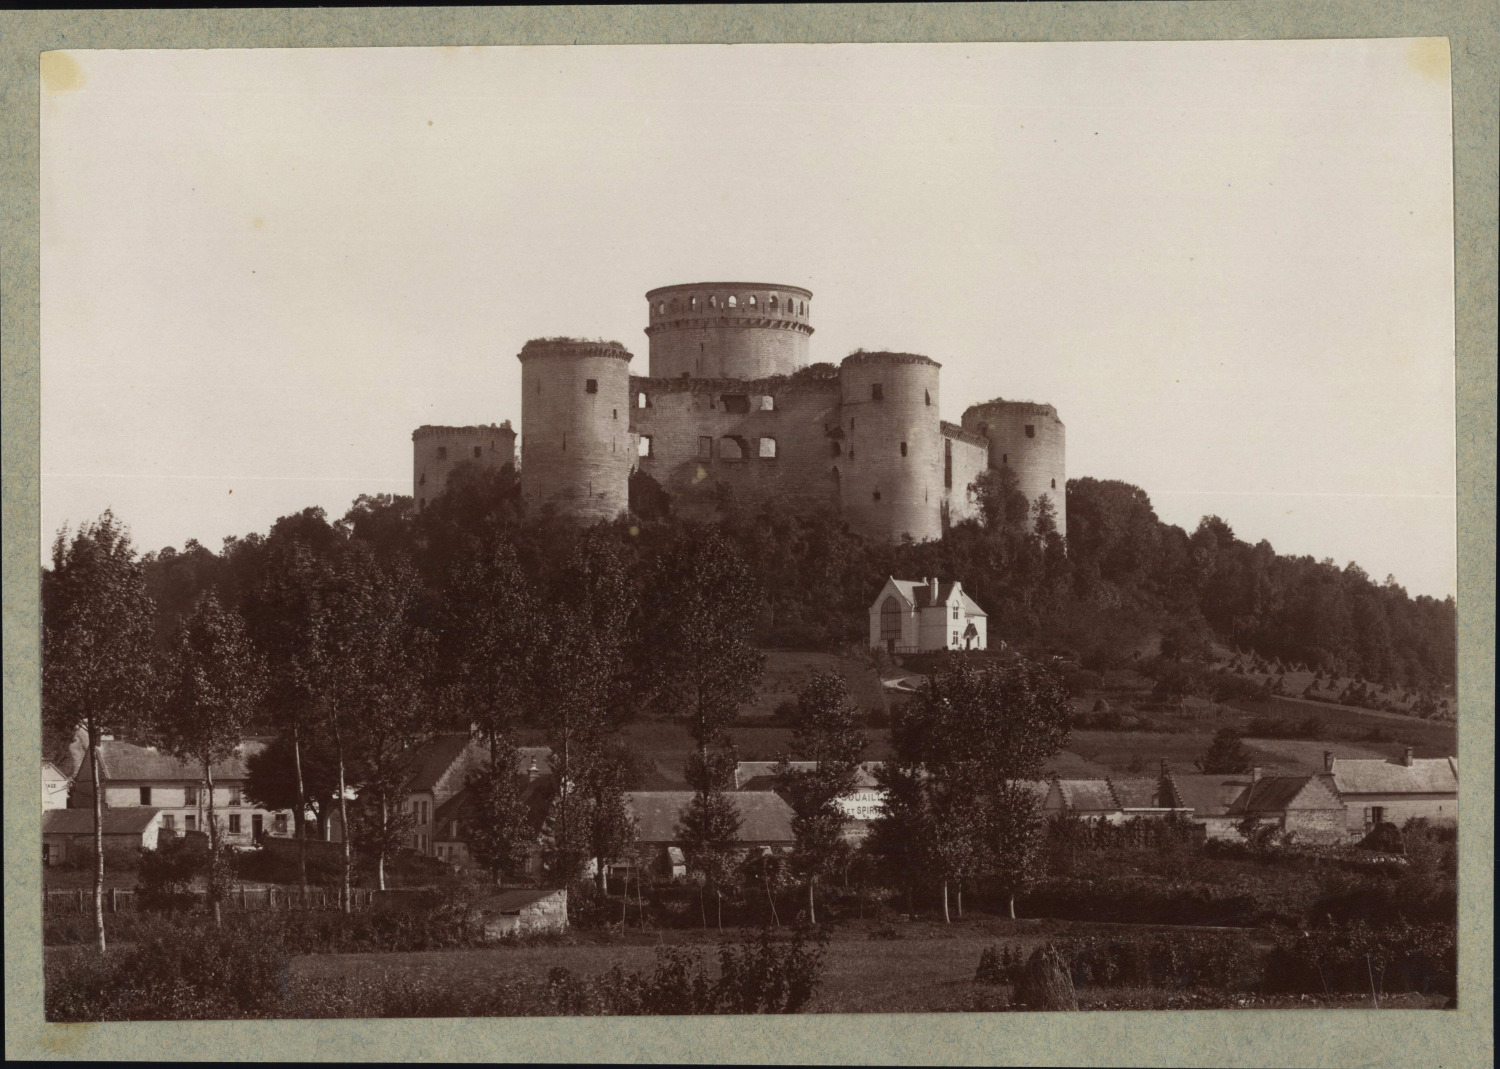 France, Coucy-le-Château-Auffrique, Château de Coucy, ca.1880, vintage print Ti